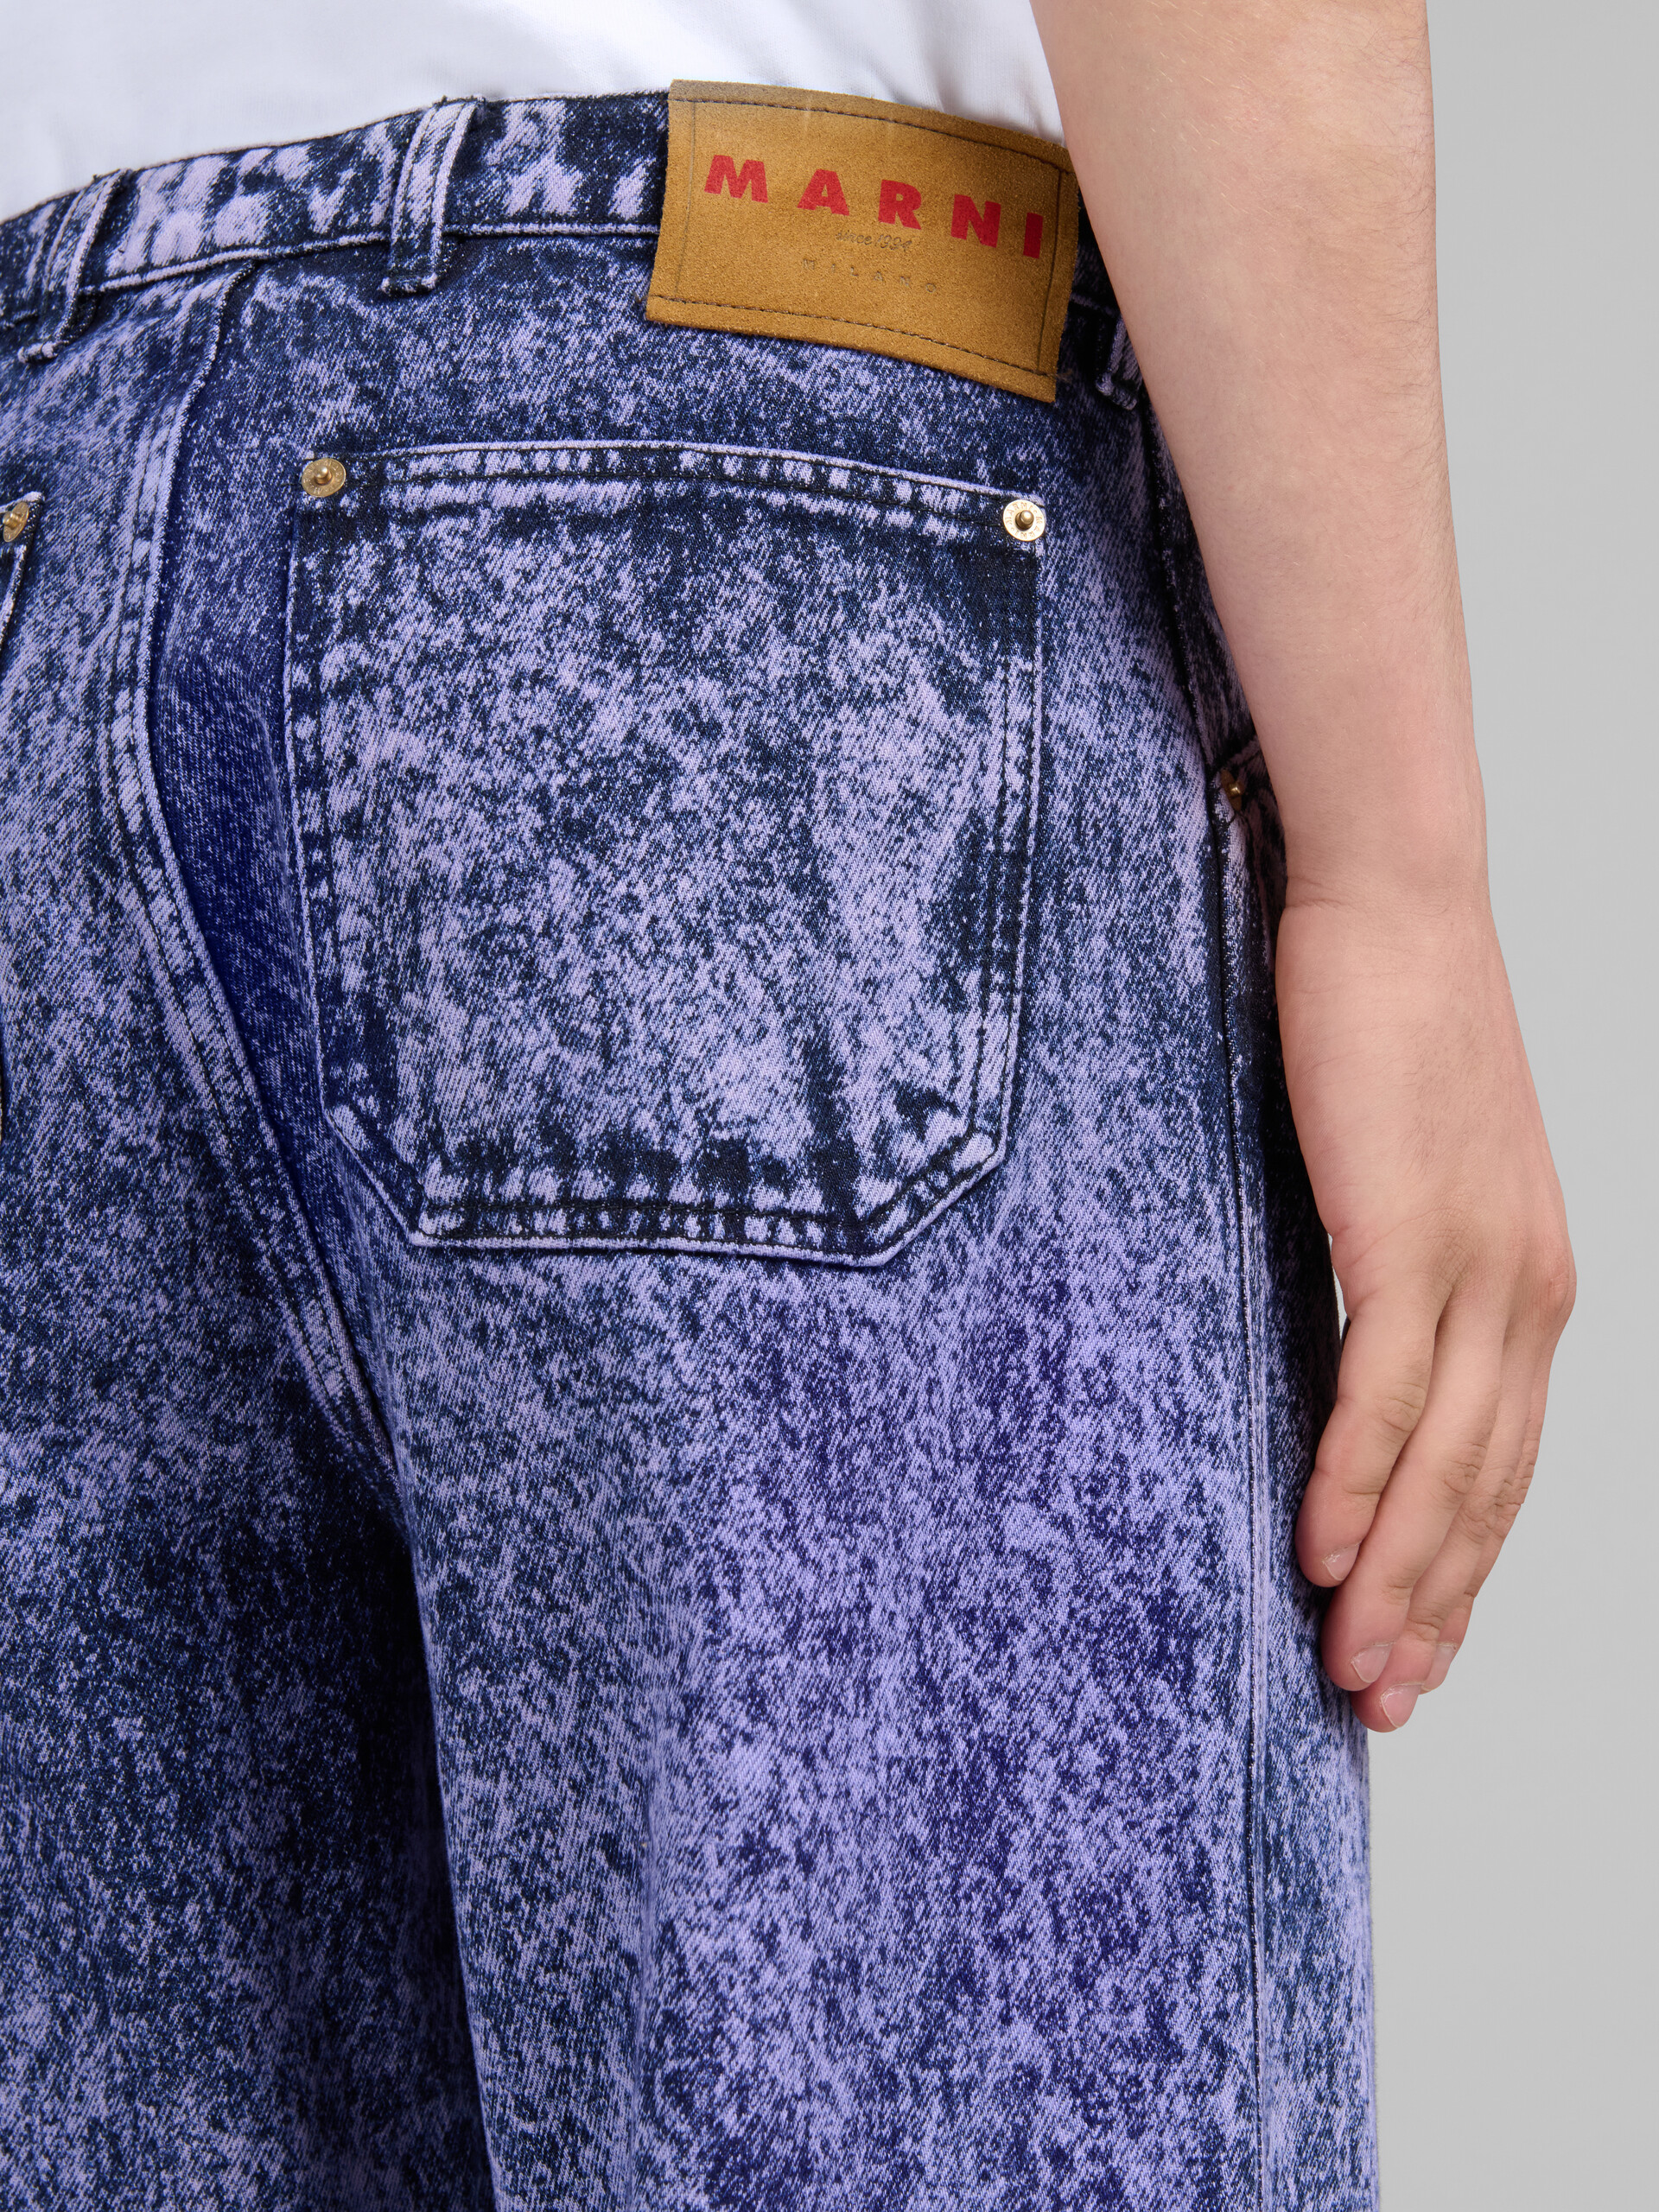 Pantalón de denim azul efecto mármol - Pantalones - Image 4